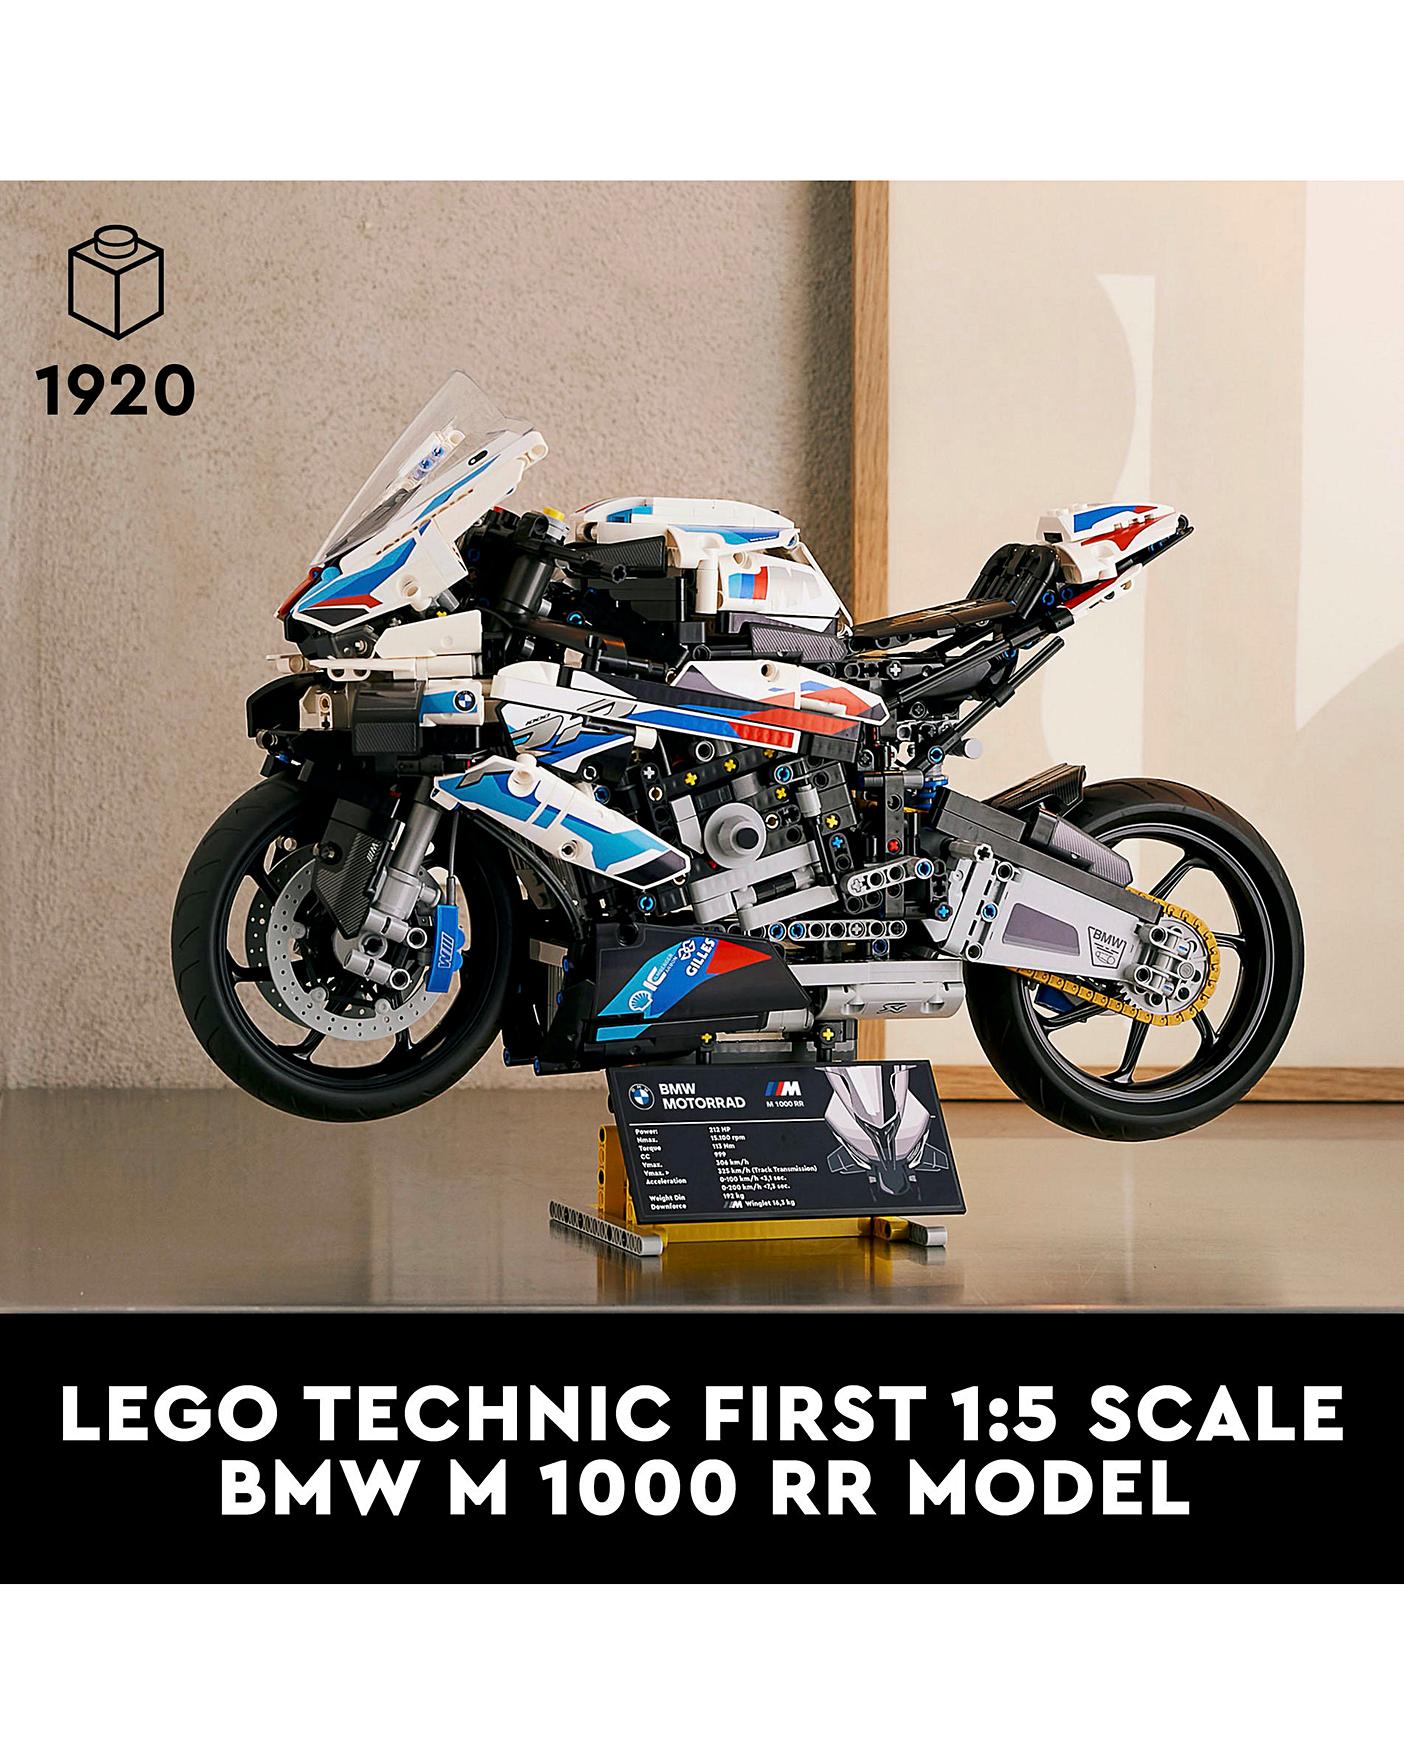 Modèle de moto BMW M 1000RR (1920 pièces)